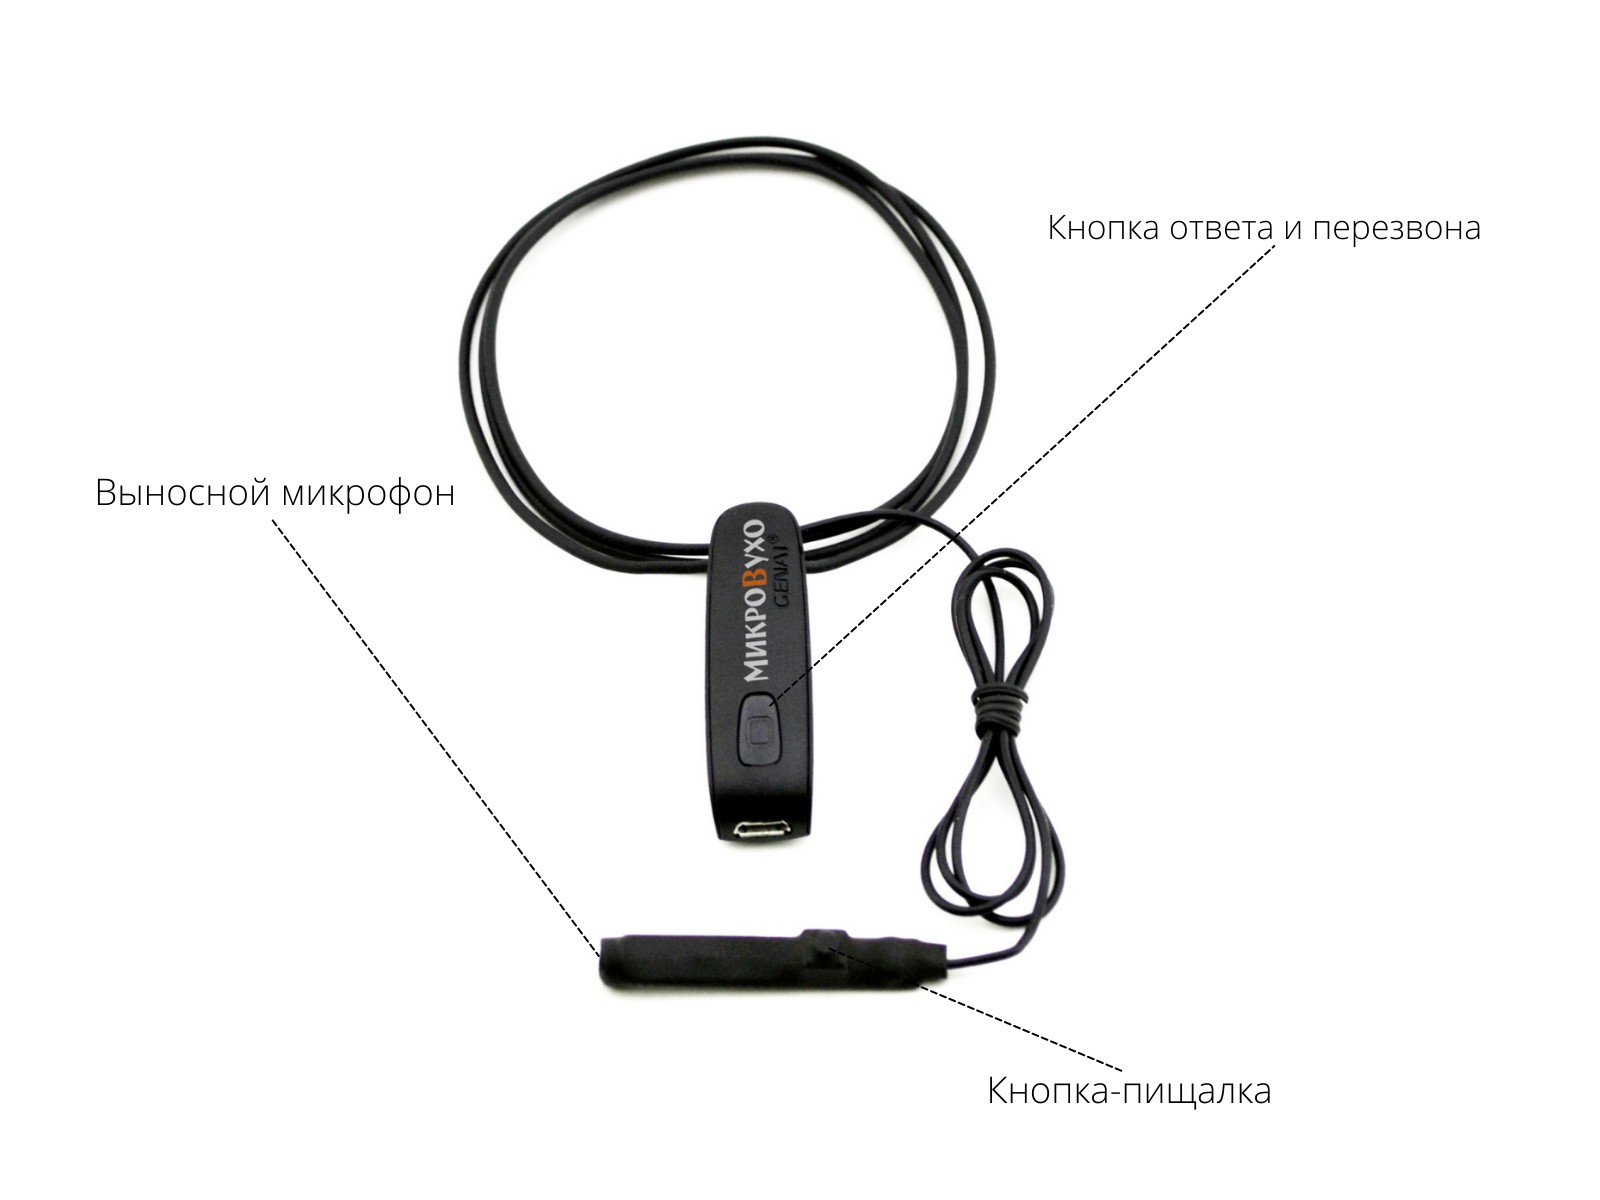 Гарнитура Bluetooth Basic с капсульным микронаушником K3 6 мм 4